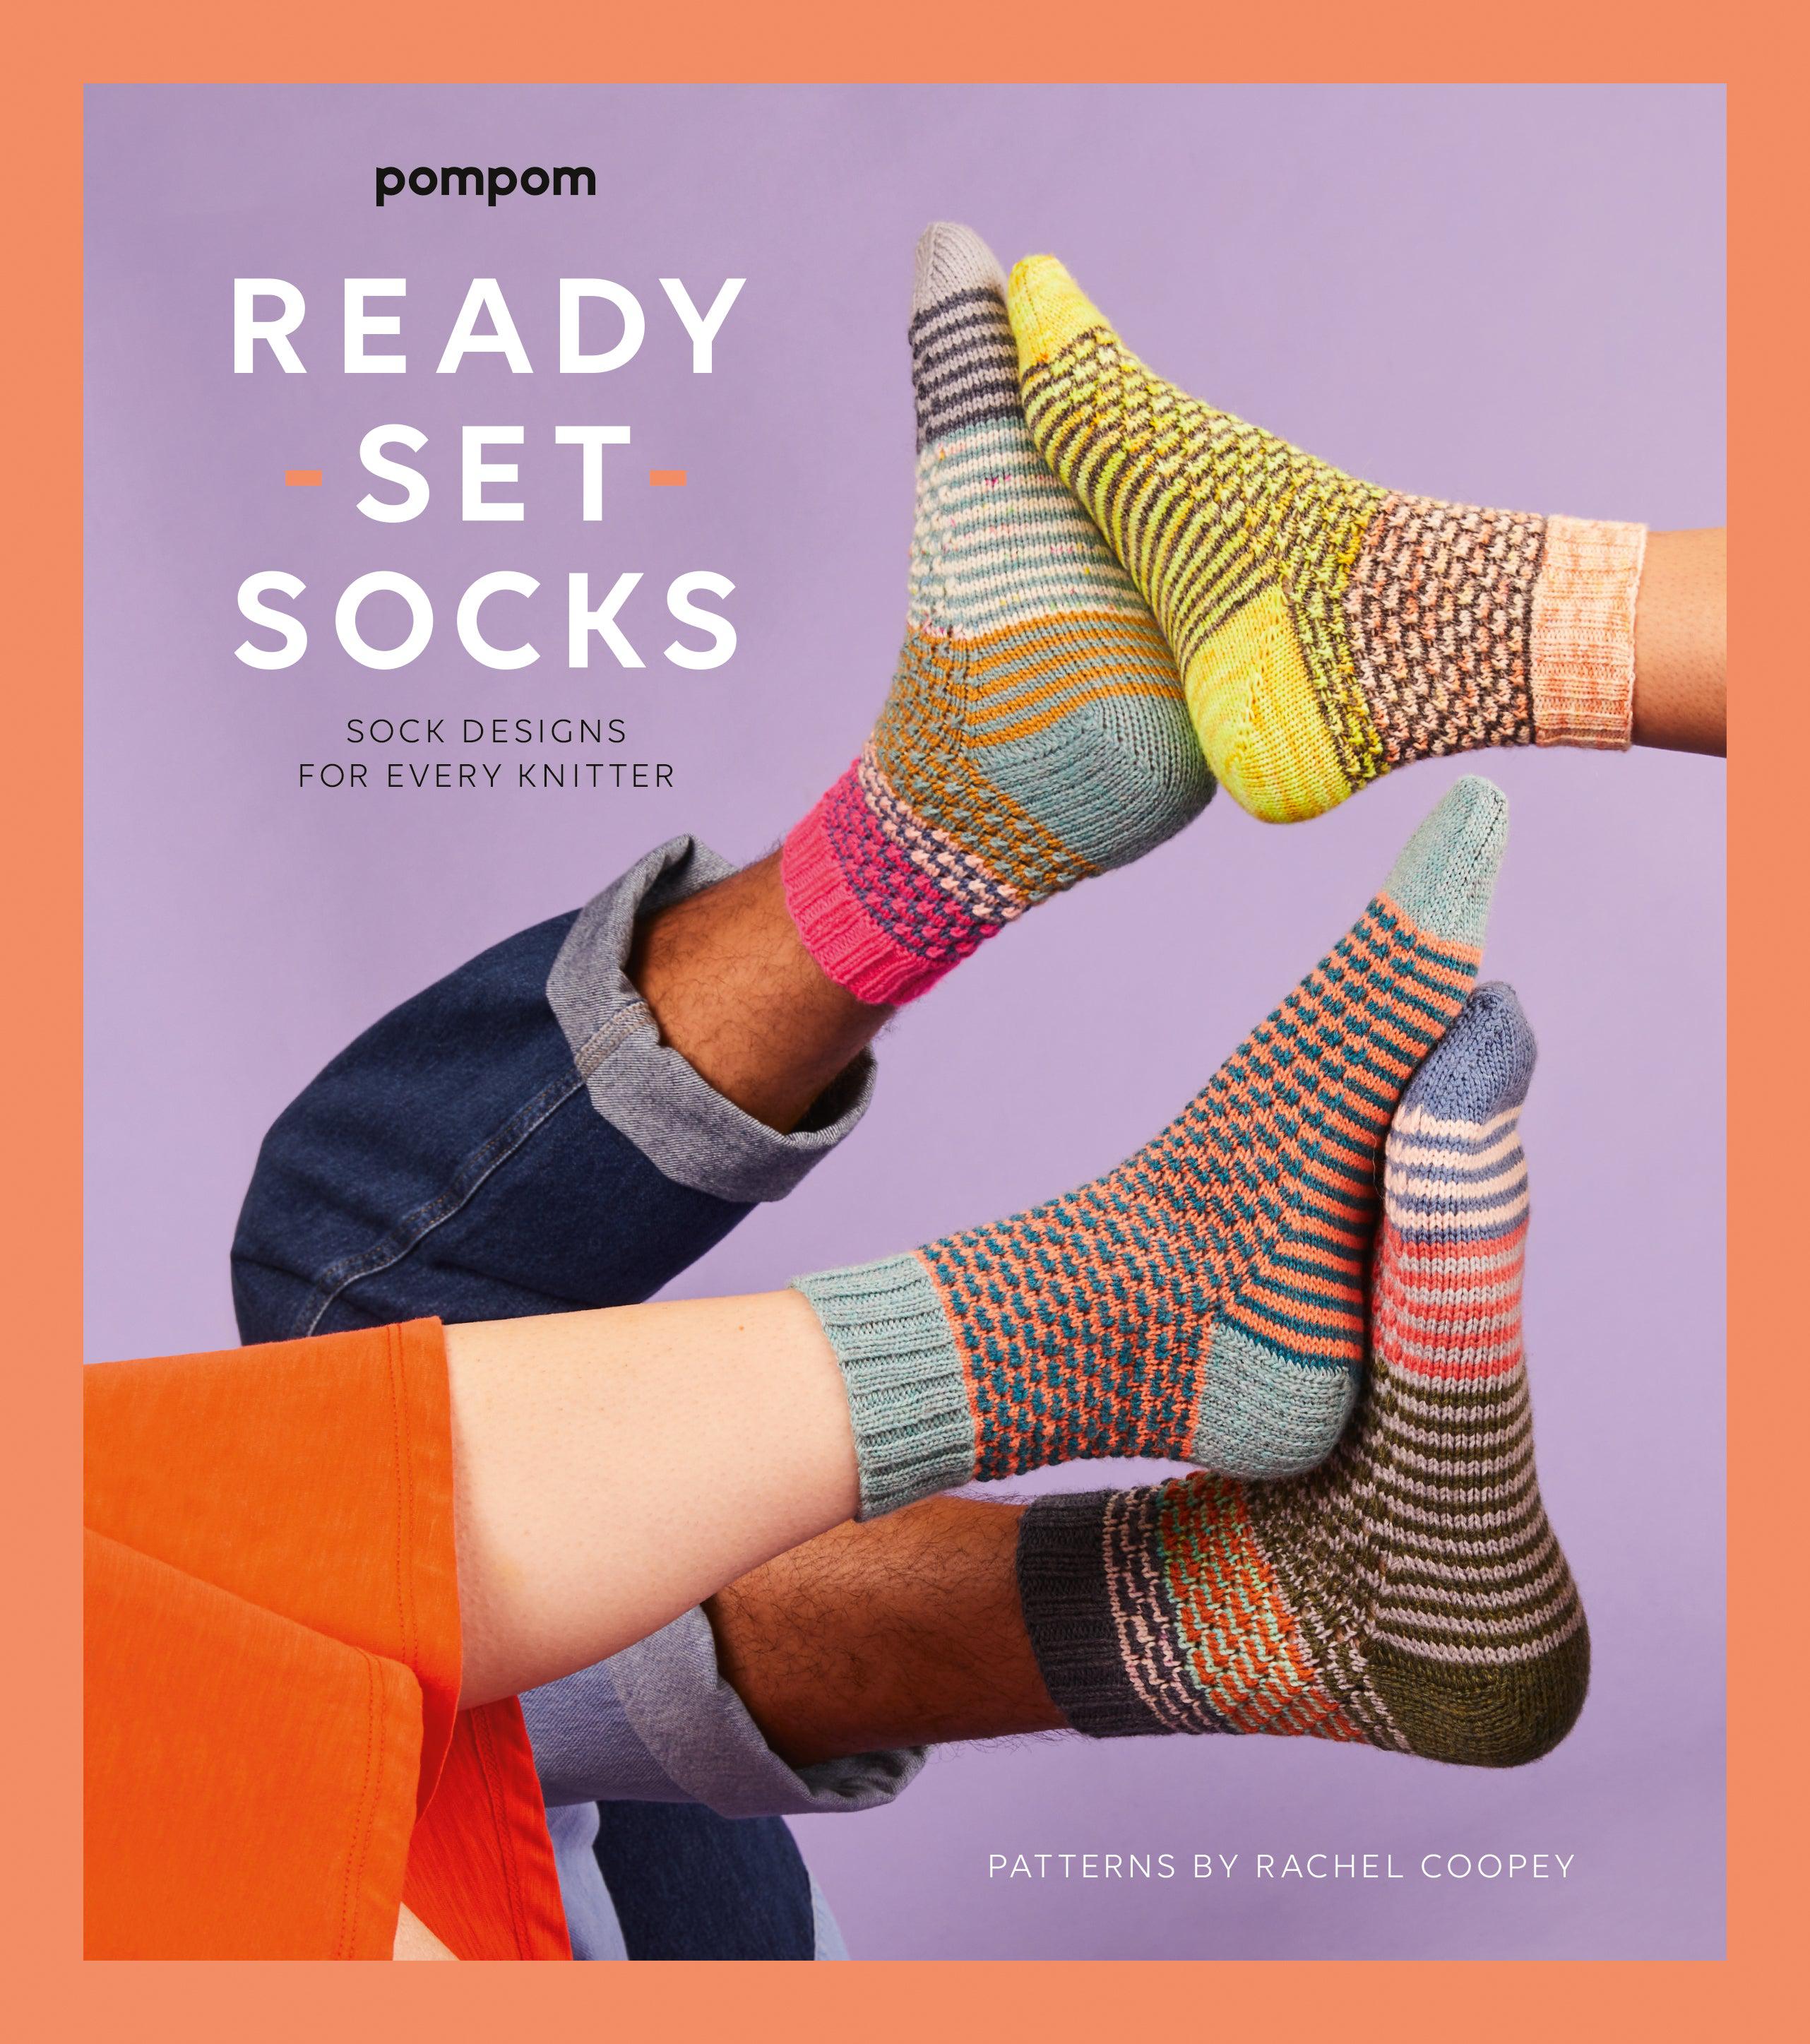 10 Modern Sock Knitting Kits for Beginners (Hand-Picked)